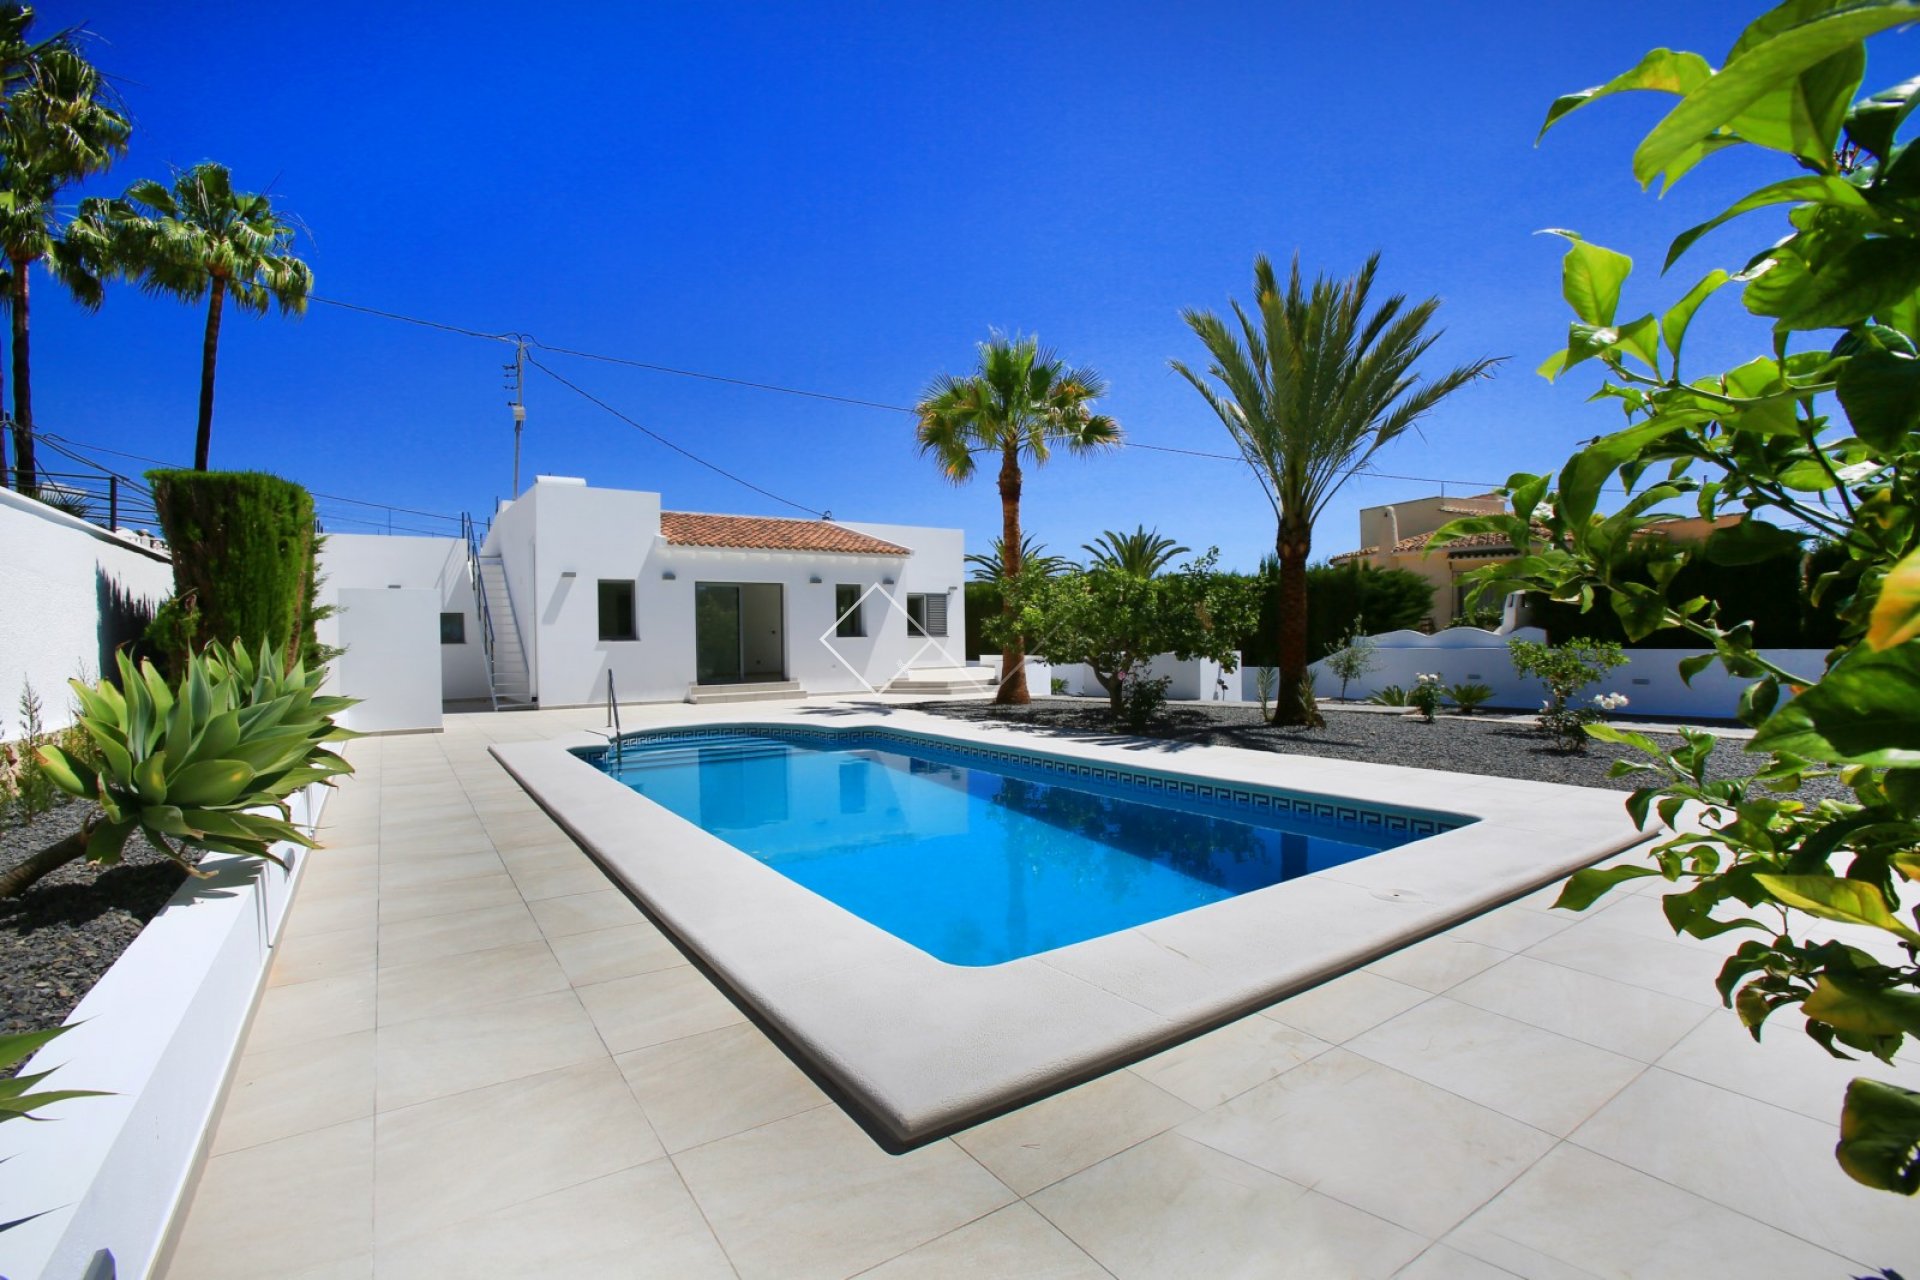 Gerenoveerde villa te koop in Benissa op 200m van het strand